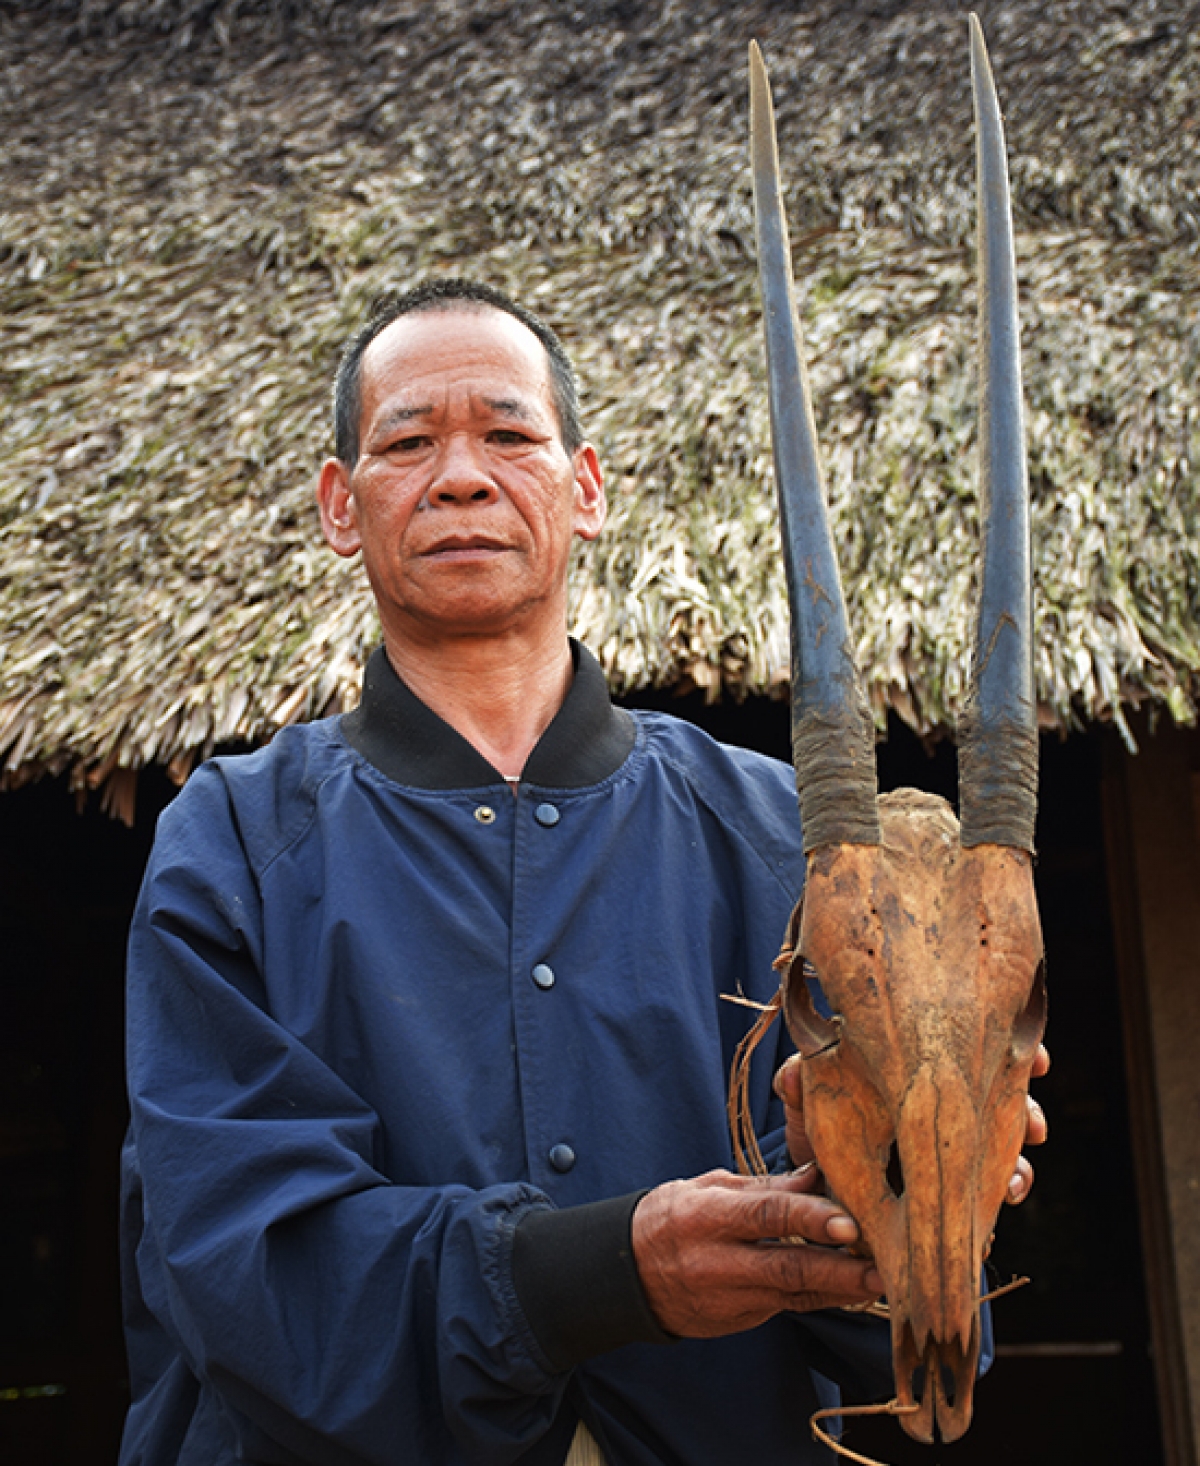 Người dân thôn Aur, xã A Vương, huyện Tây Giang Quảng Nam lưu giữ sừng và đầu con sao la săn bắt được. Ảnh: Khu bảo tồn loài sao la Quảng Nam.